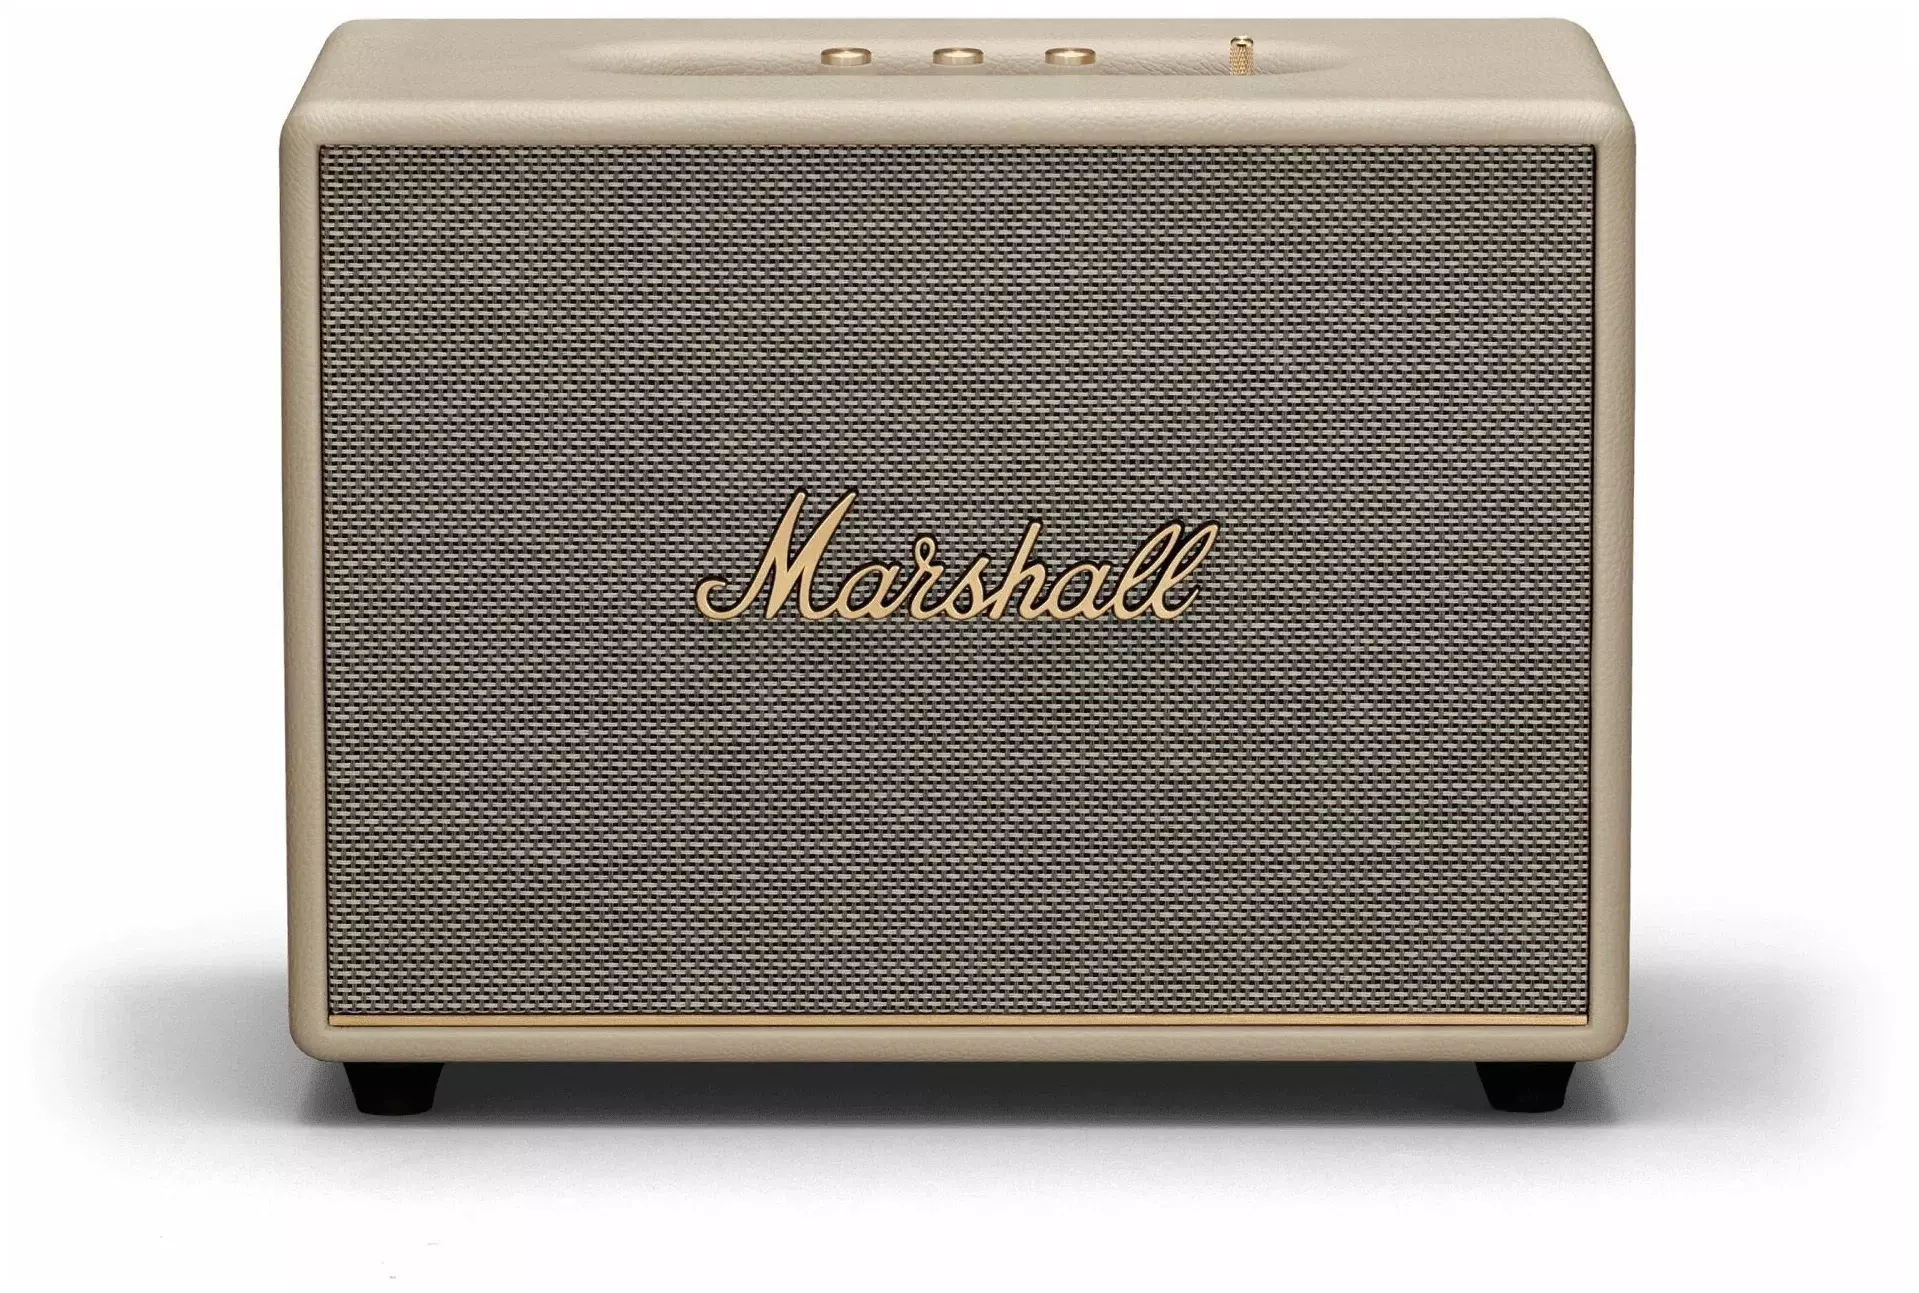 Marshall woburn 3. Портативная акустика Marshall Stanmore III Cream (UAE). Marshall Woburn 2 коробка. Колонка Маршалл 10вт willen реплика.